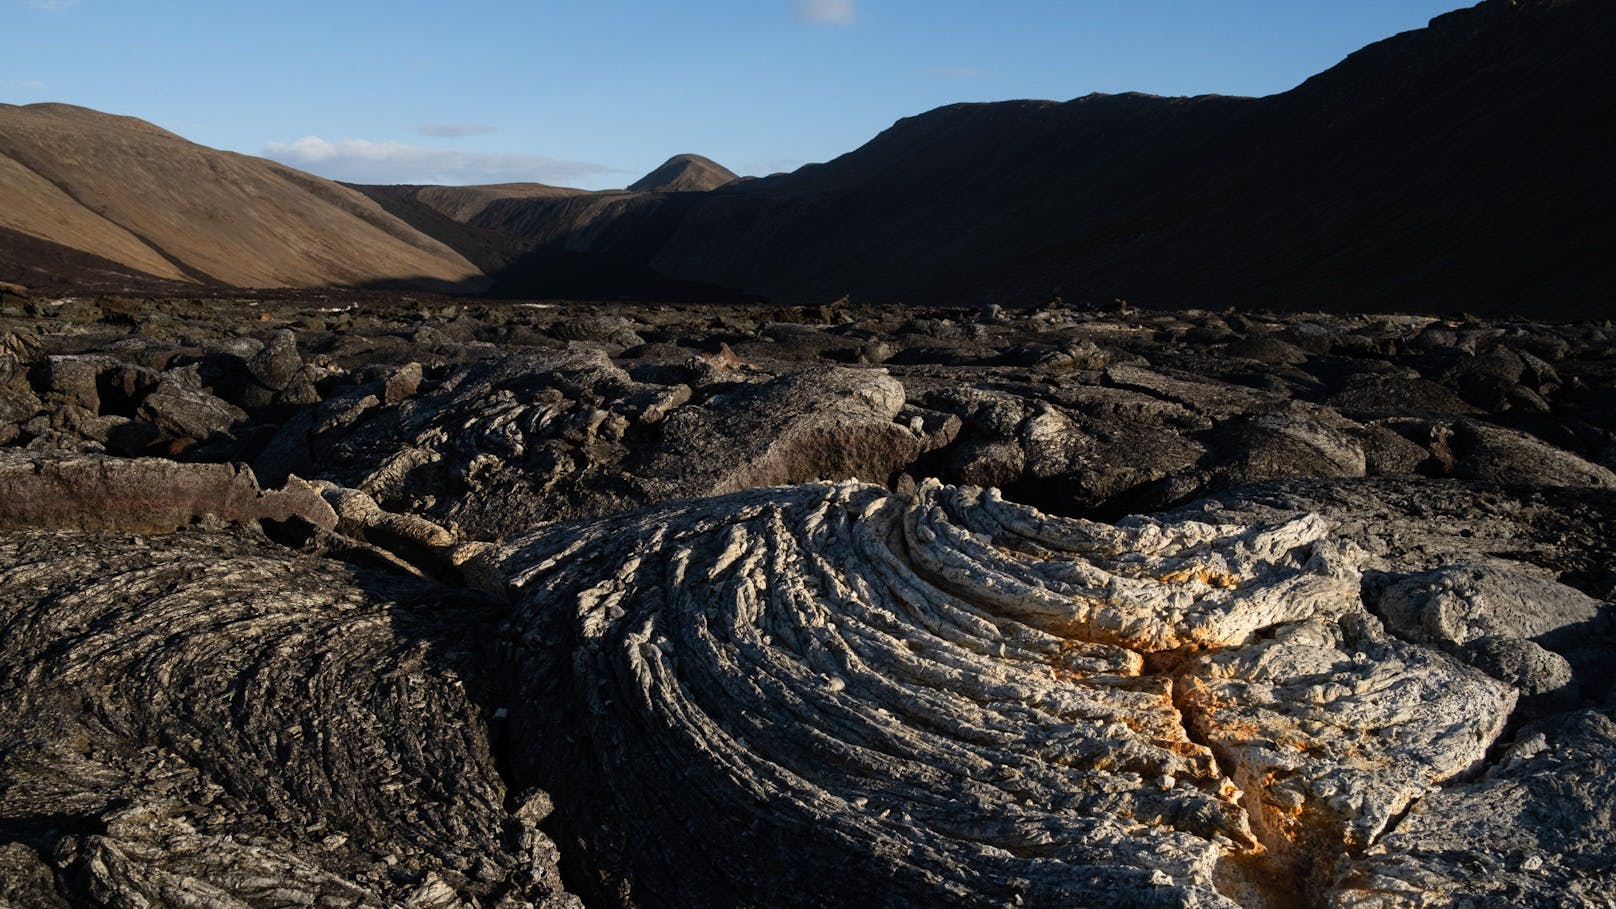 Nach dem Ausbruch des Vulkans Fagradalsfjall im Jahr 2021 bildete sich ein Lavafeld. Der Standort liegt nur wenige Kilometer von Grindavik entfernt. Nach mehr als 1.400 Erdbeben in den letzten 48 Stunden in der Region warnen Experten vor einem sehr wahrscheinlichen Vulkanausbruch in den kommenden Tagen.